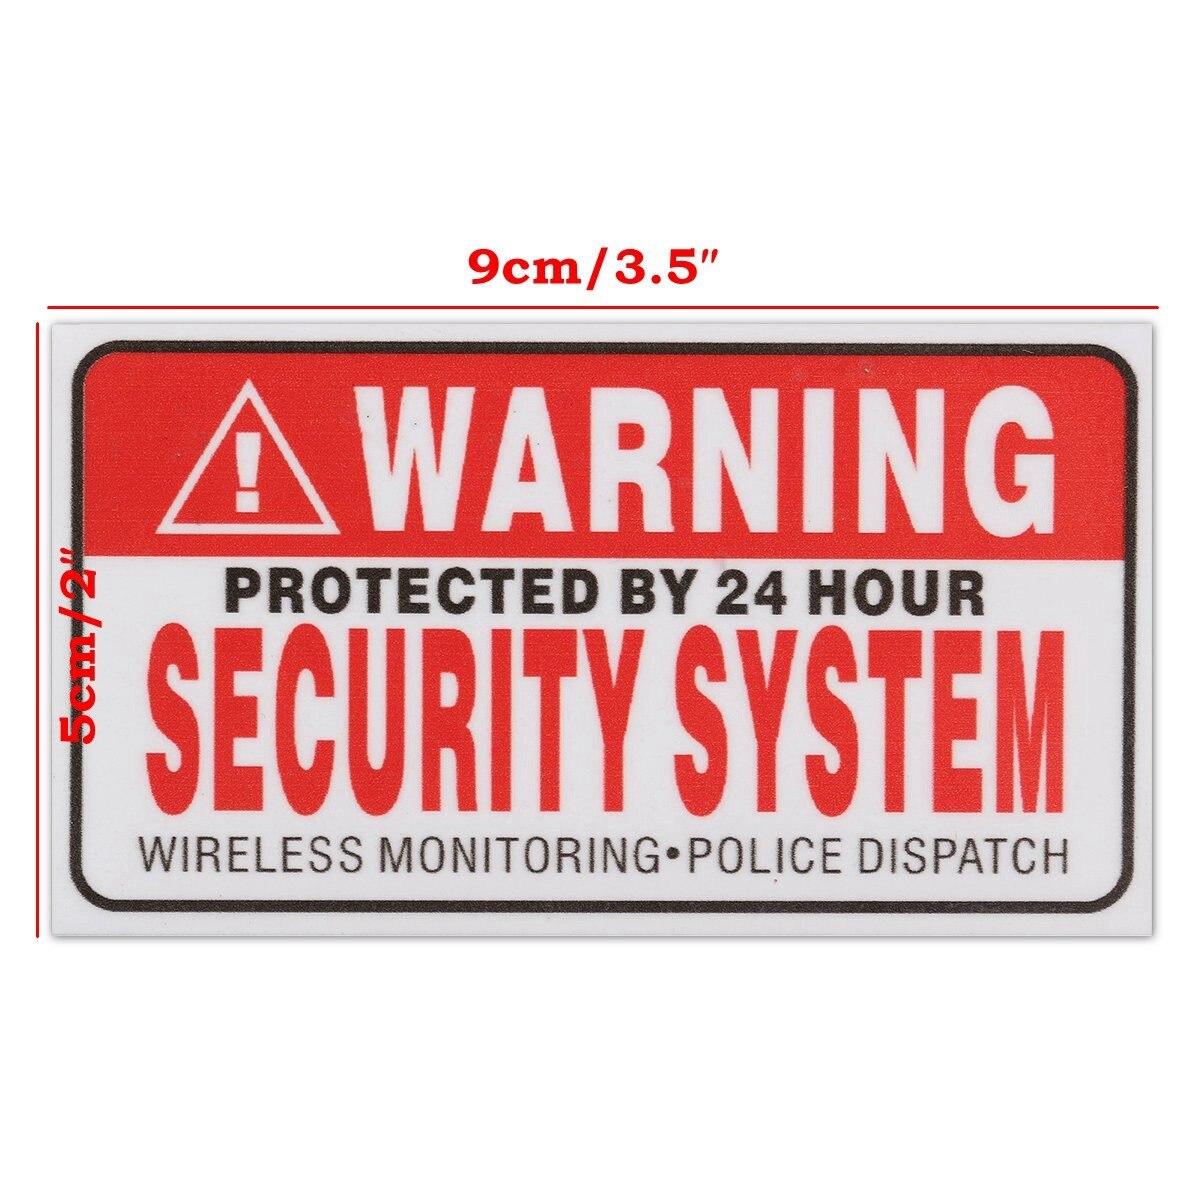 5 Stks/set Waarschuwing Beschermd Door 24 Uur Beveiligingssysteem Stickers Saftey Alarm Borden Decal Waarschuwing Mark Business 9*5cm Auto Styling